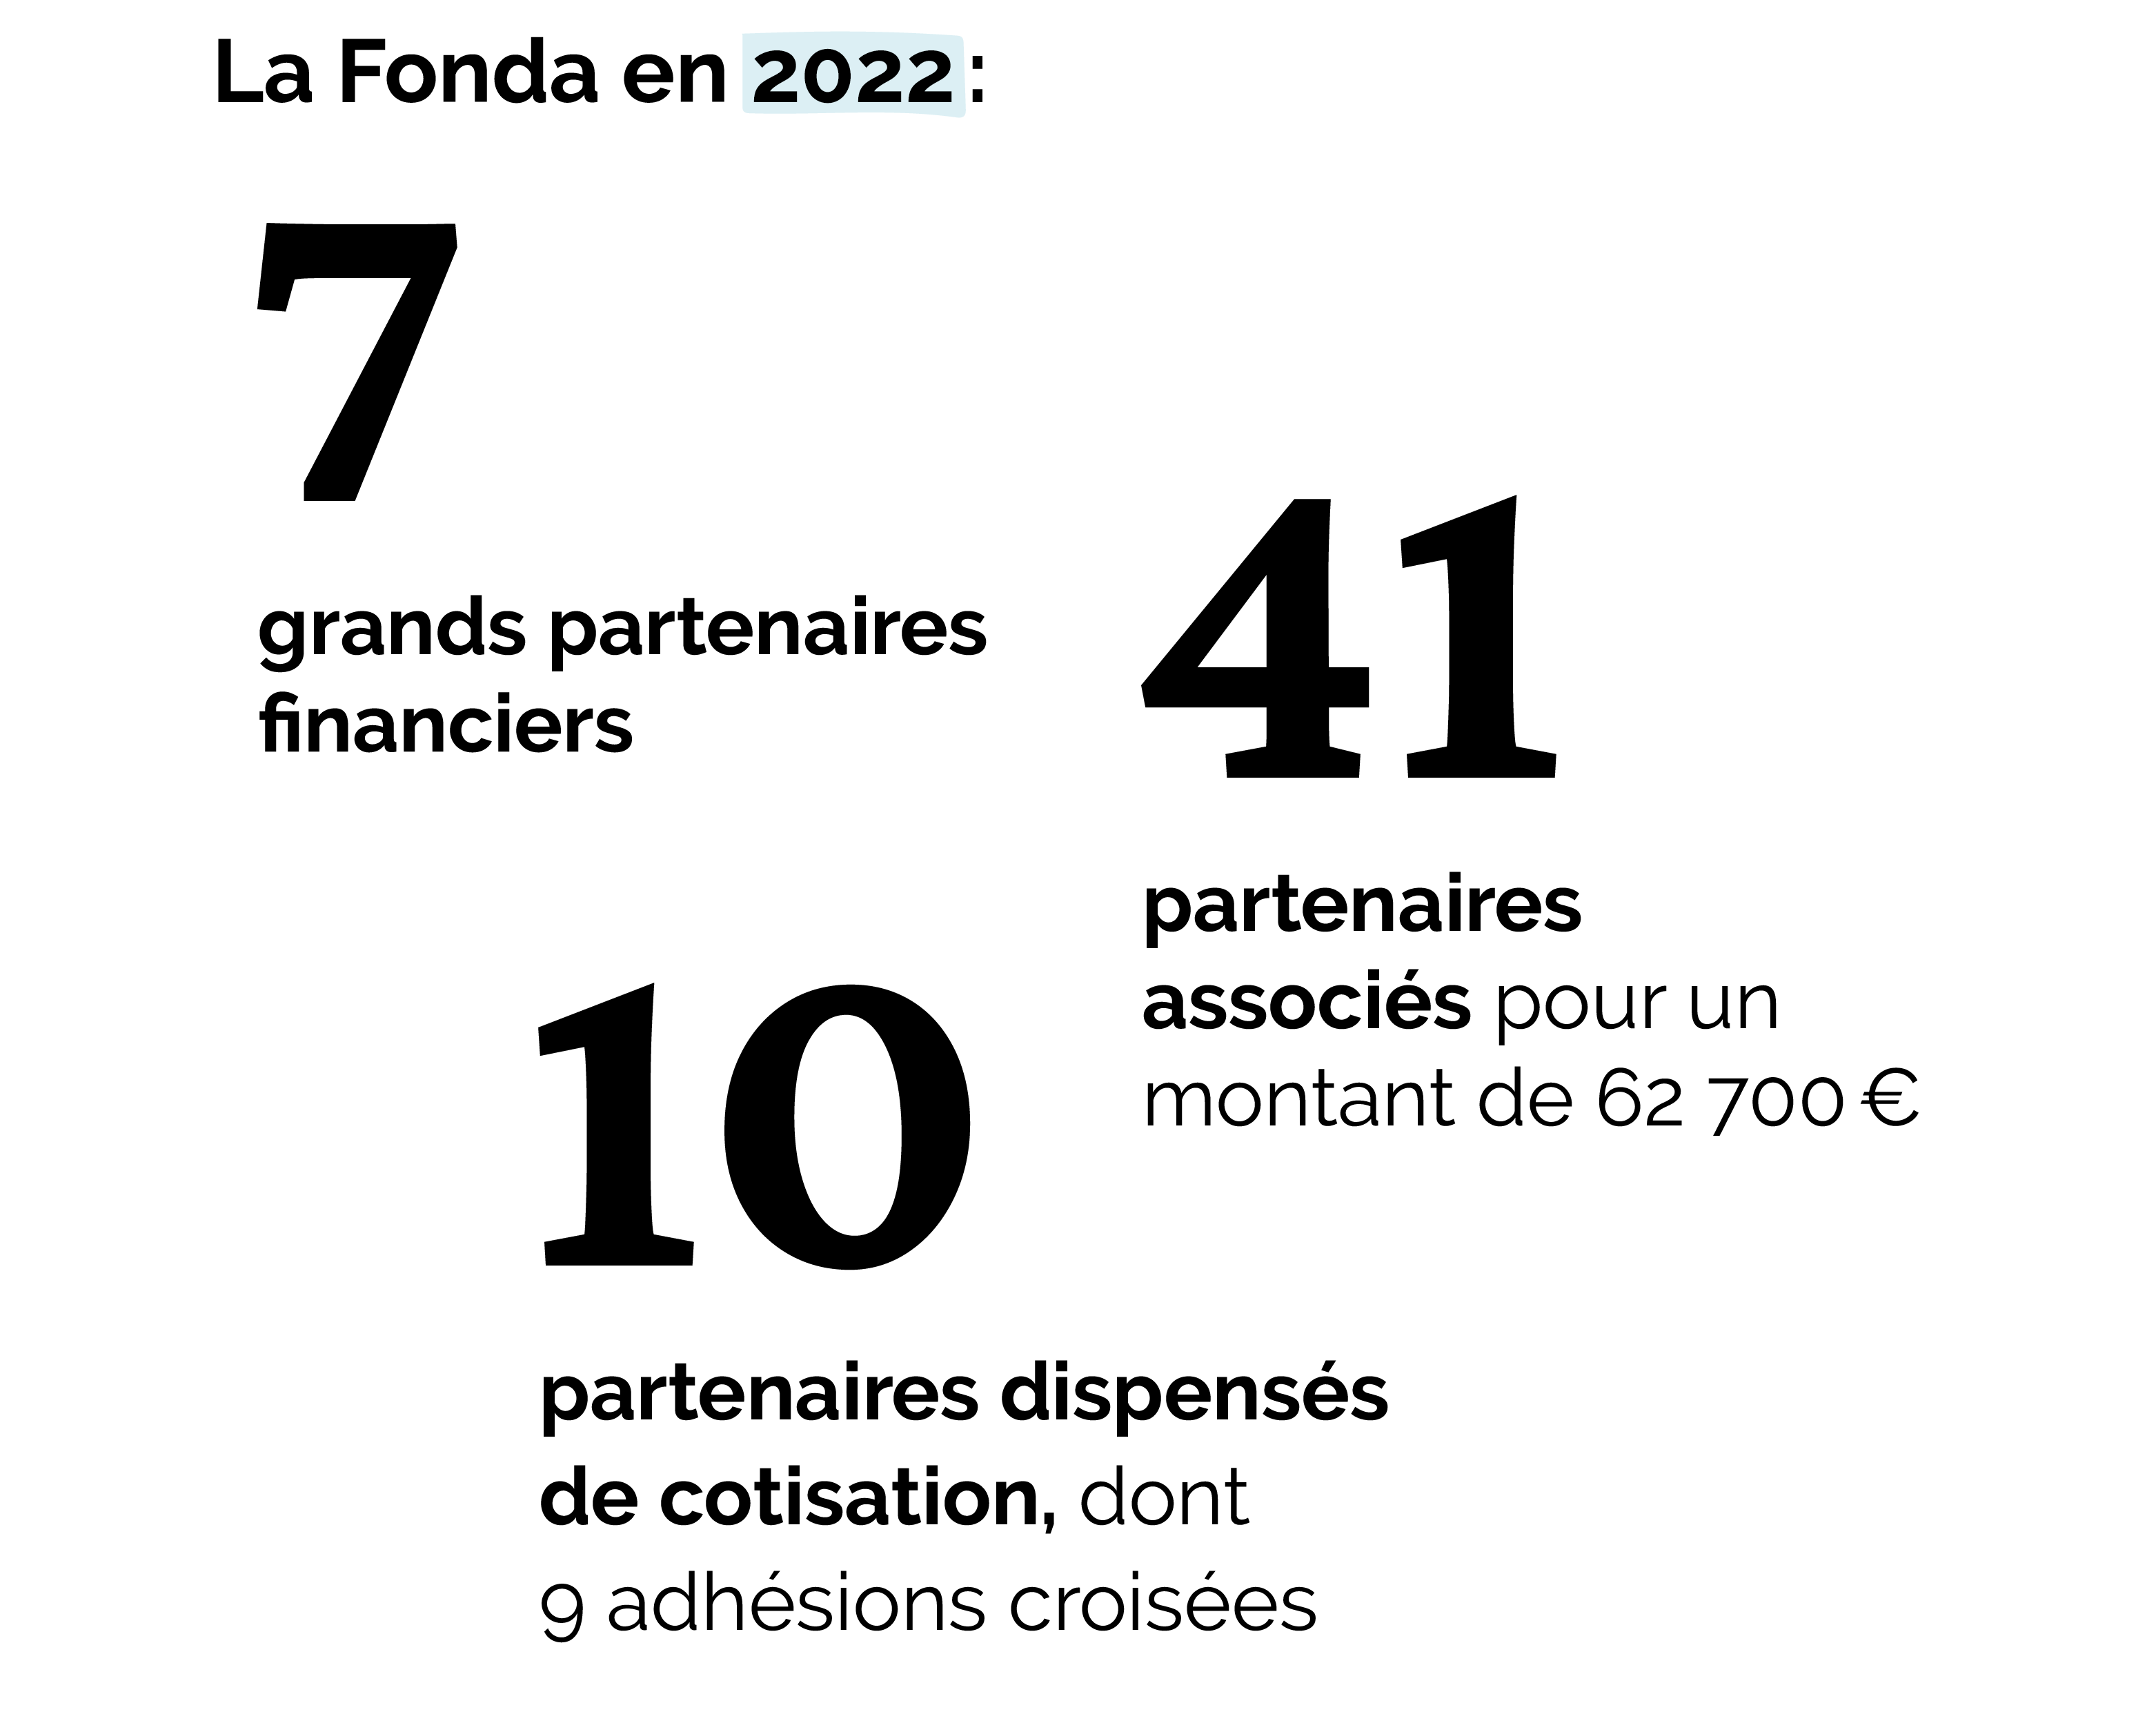 Partenaires Fonda 2022 © Anna Maheu - La Fonda